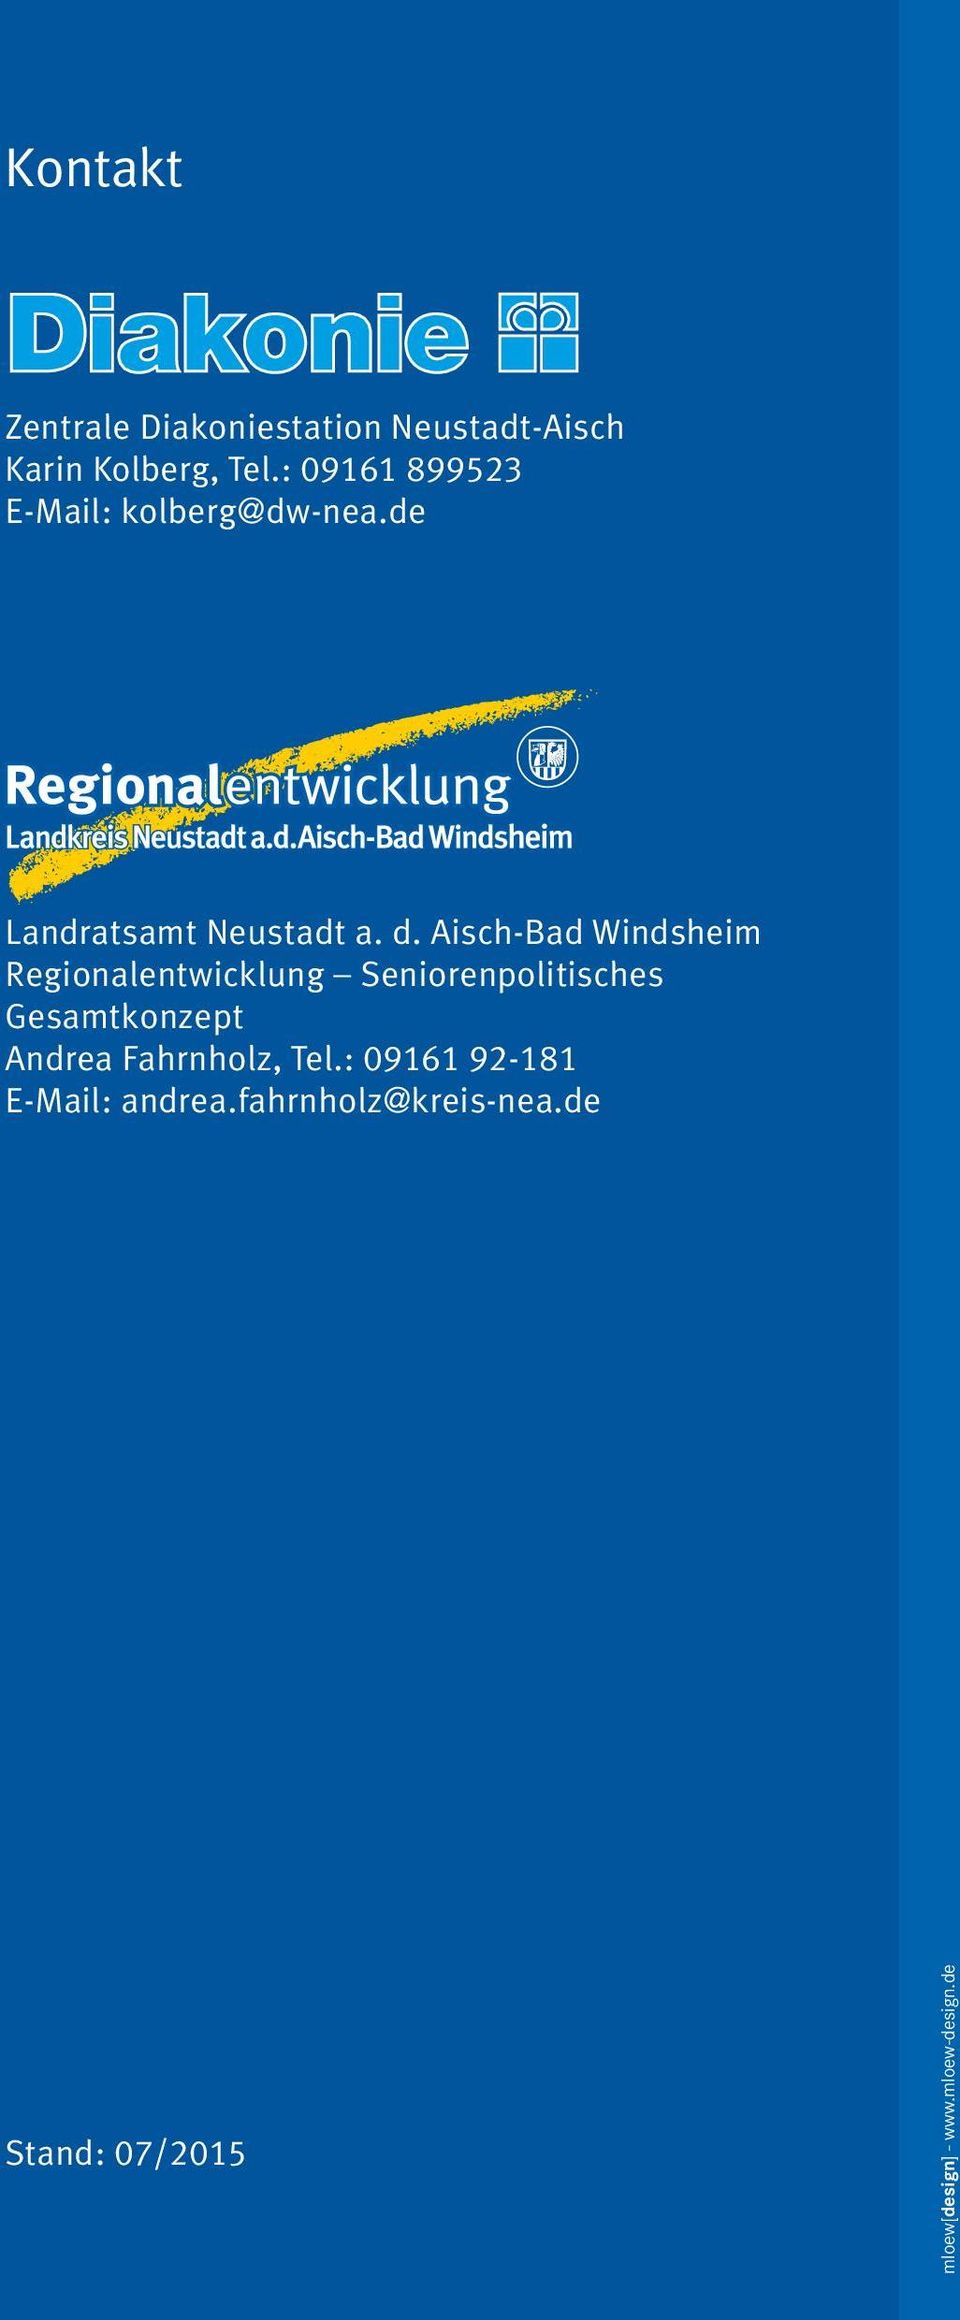 Aisch-Bad Windsheim Regionalentwicklung Seniorenpolitisches Gesamtkonzept Andrea